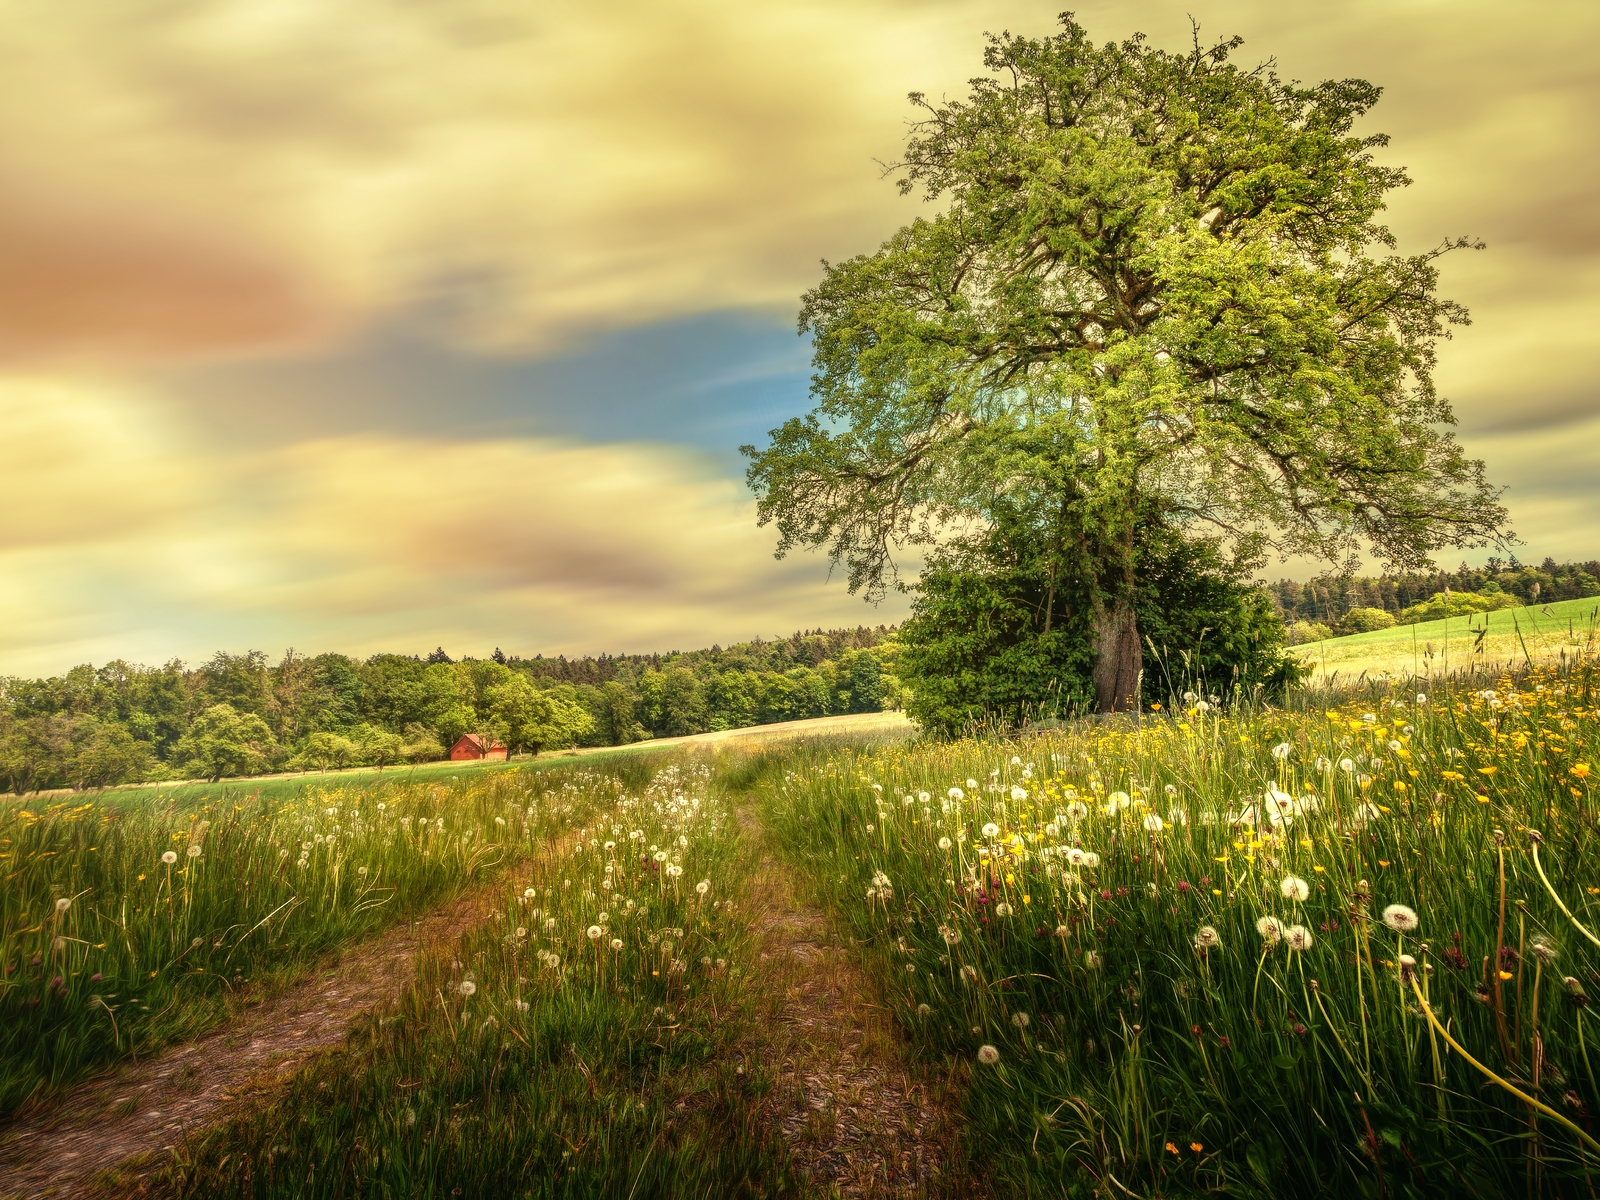 Картинка: Поле, лето, трава, одуванчики, дерево, листва, небо, дорога, домик